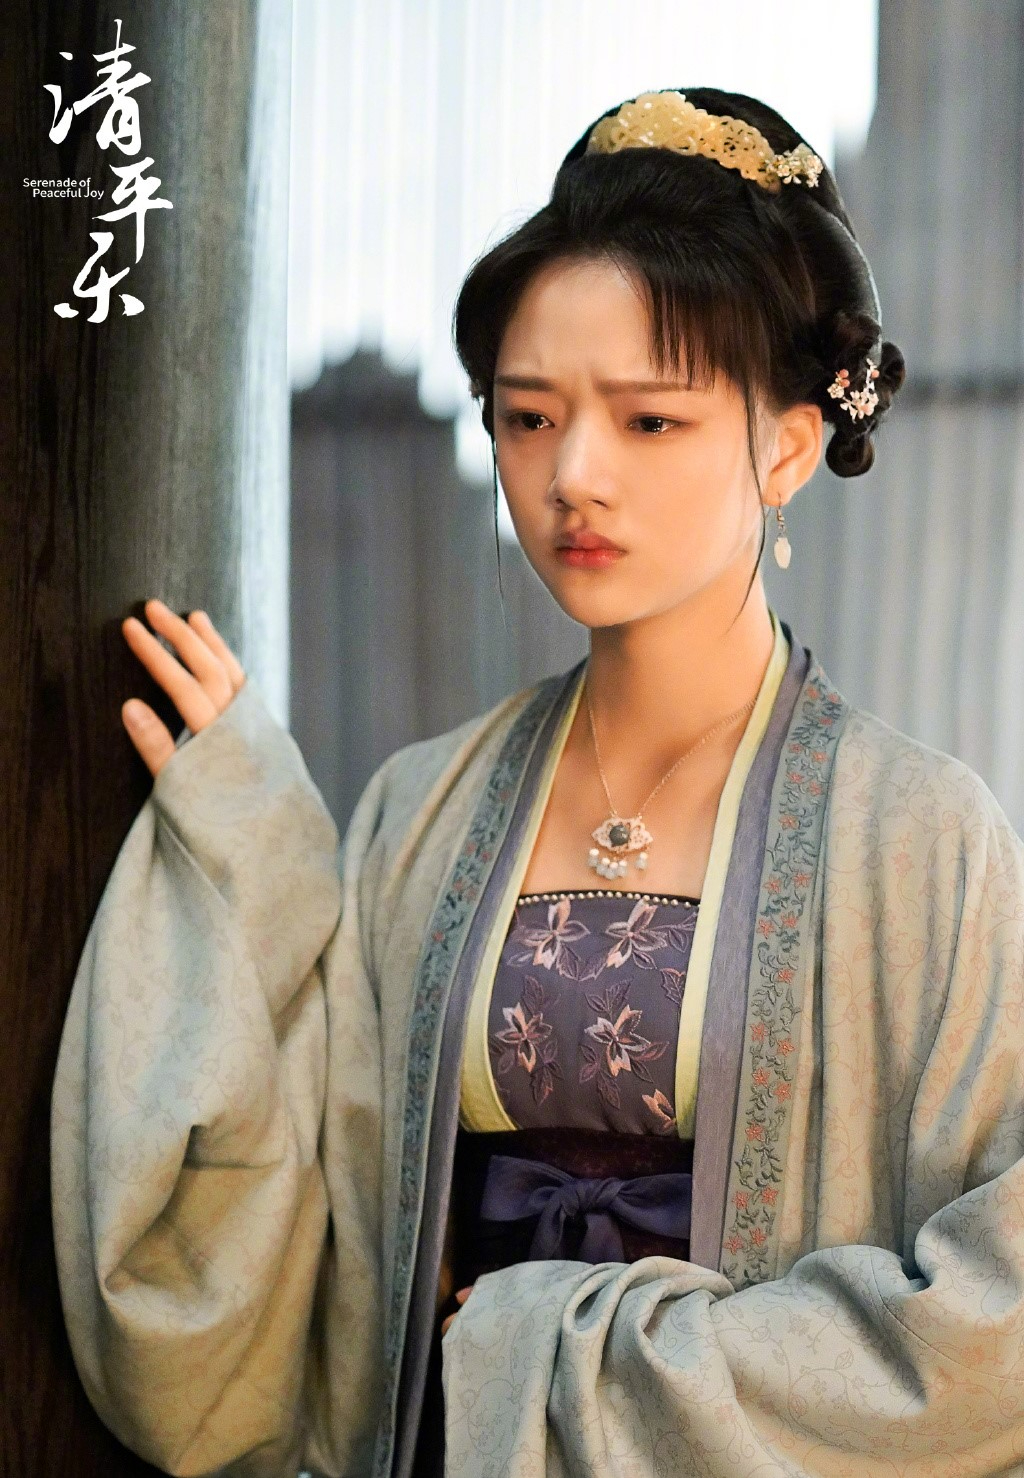 任敏在劇中飾演愛上宮廷宦官（即太監）梁懷吉的叛逆苦情公主趙徽柔。